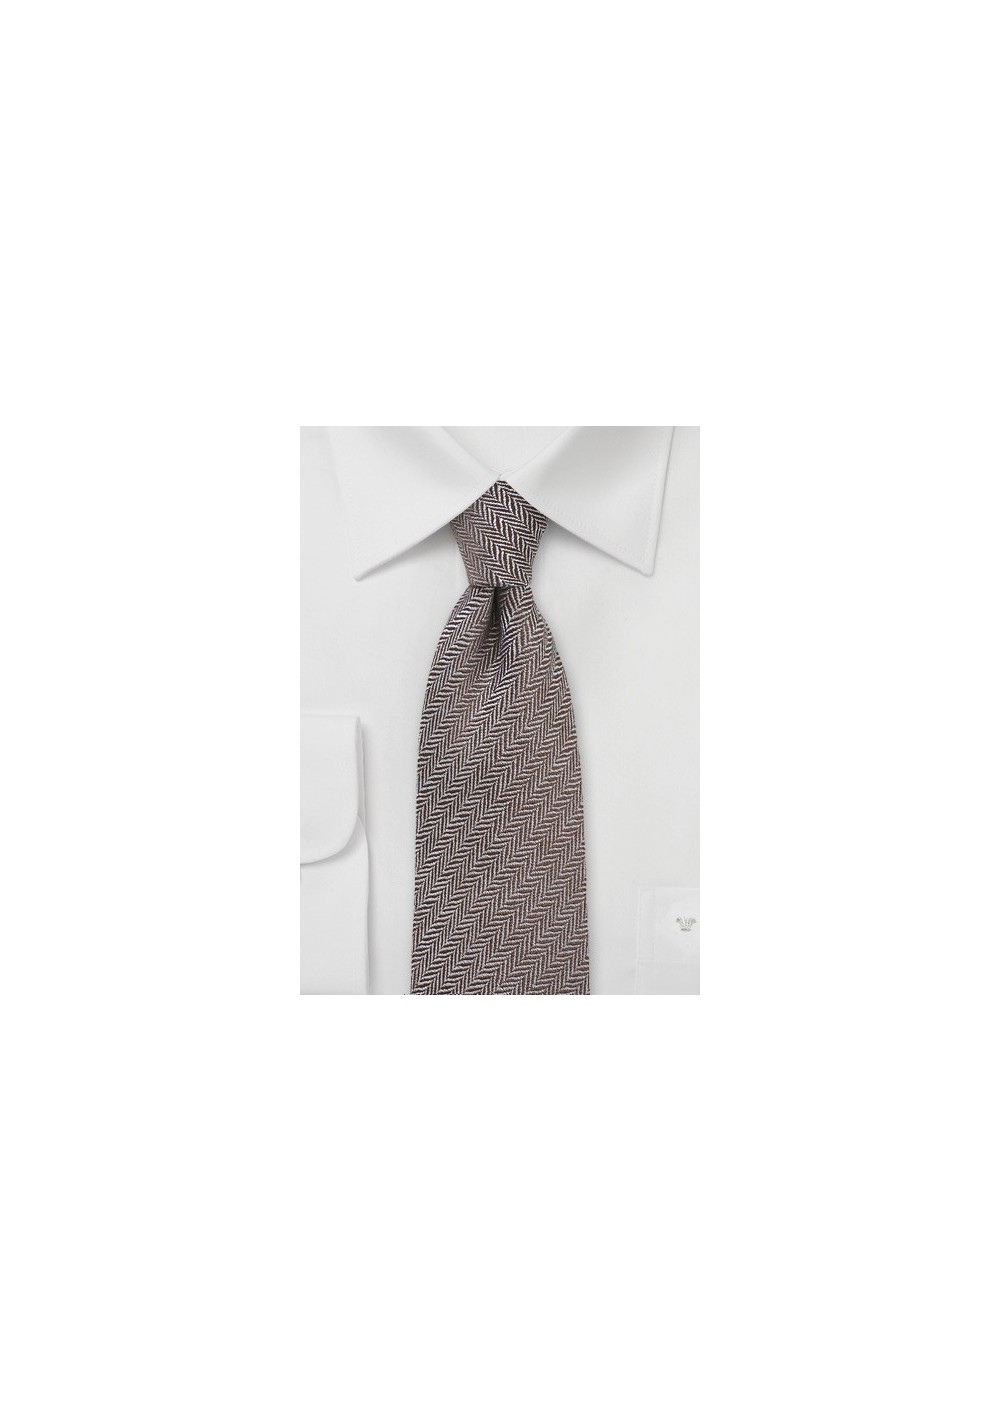 Autumn Wool Tie in Brown with Herringbone Weave